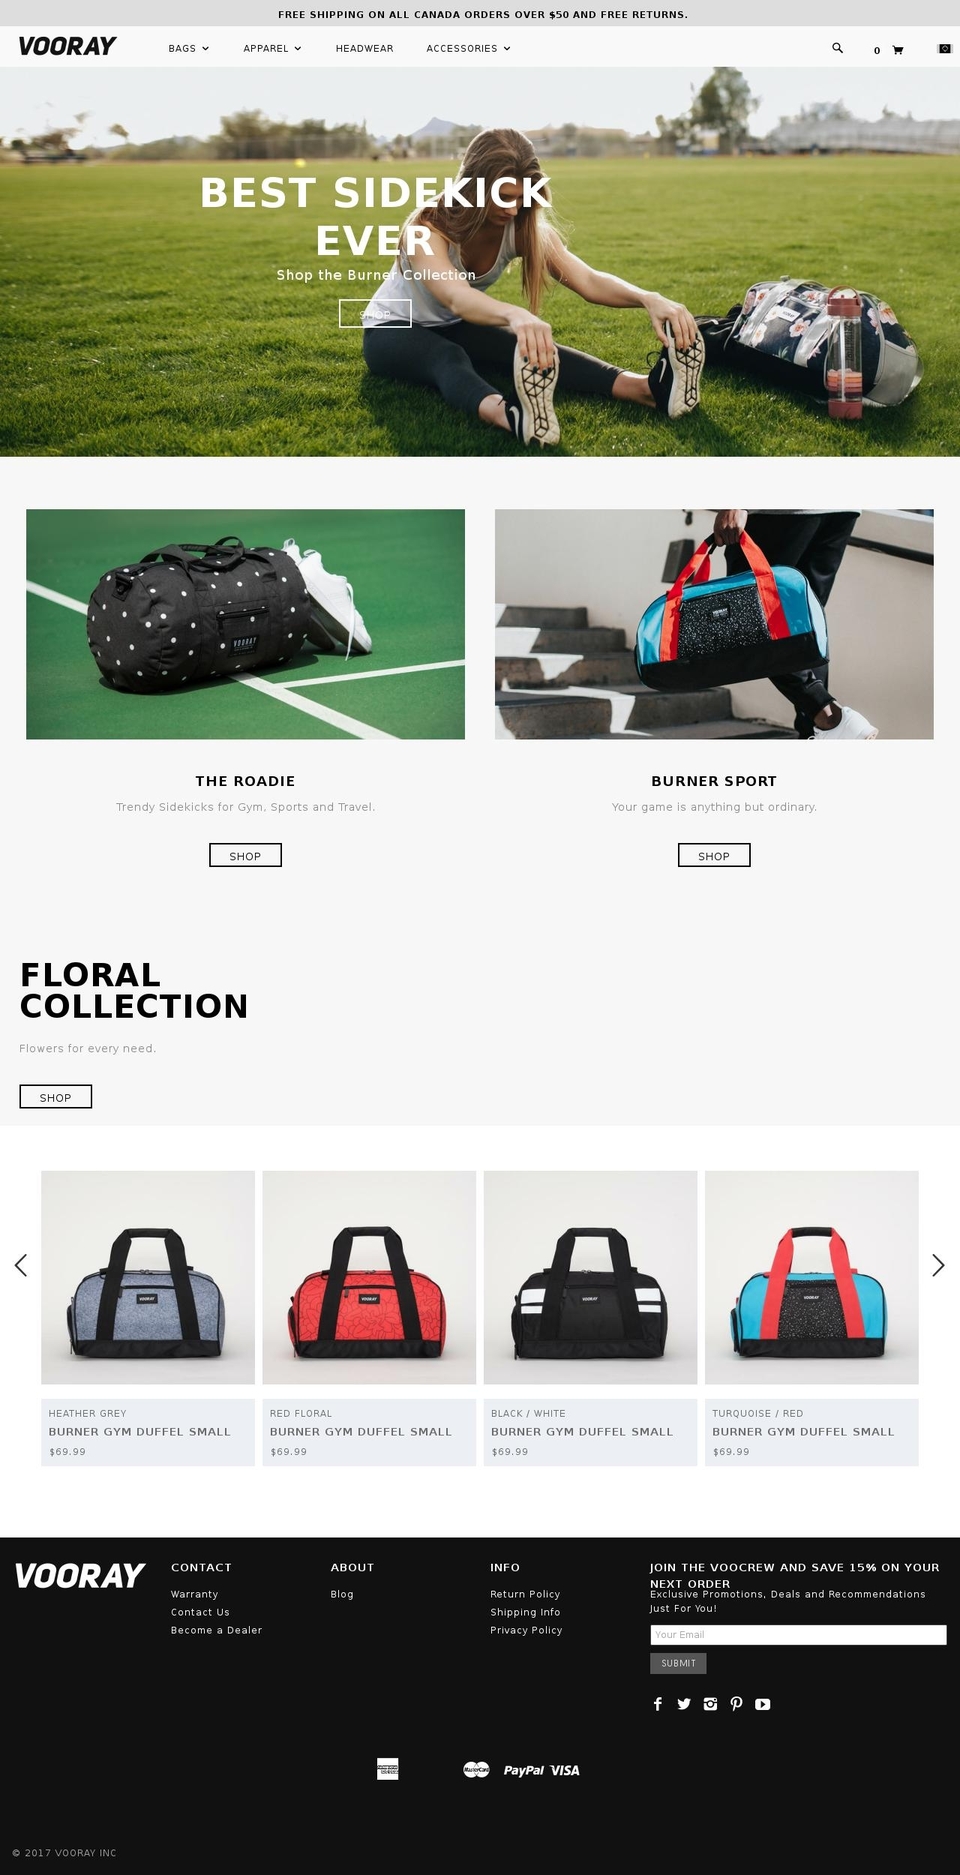 vooray.ca shopify website screenshot